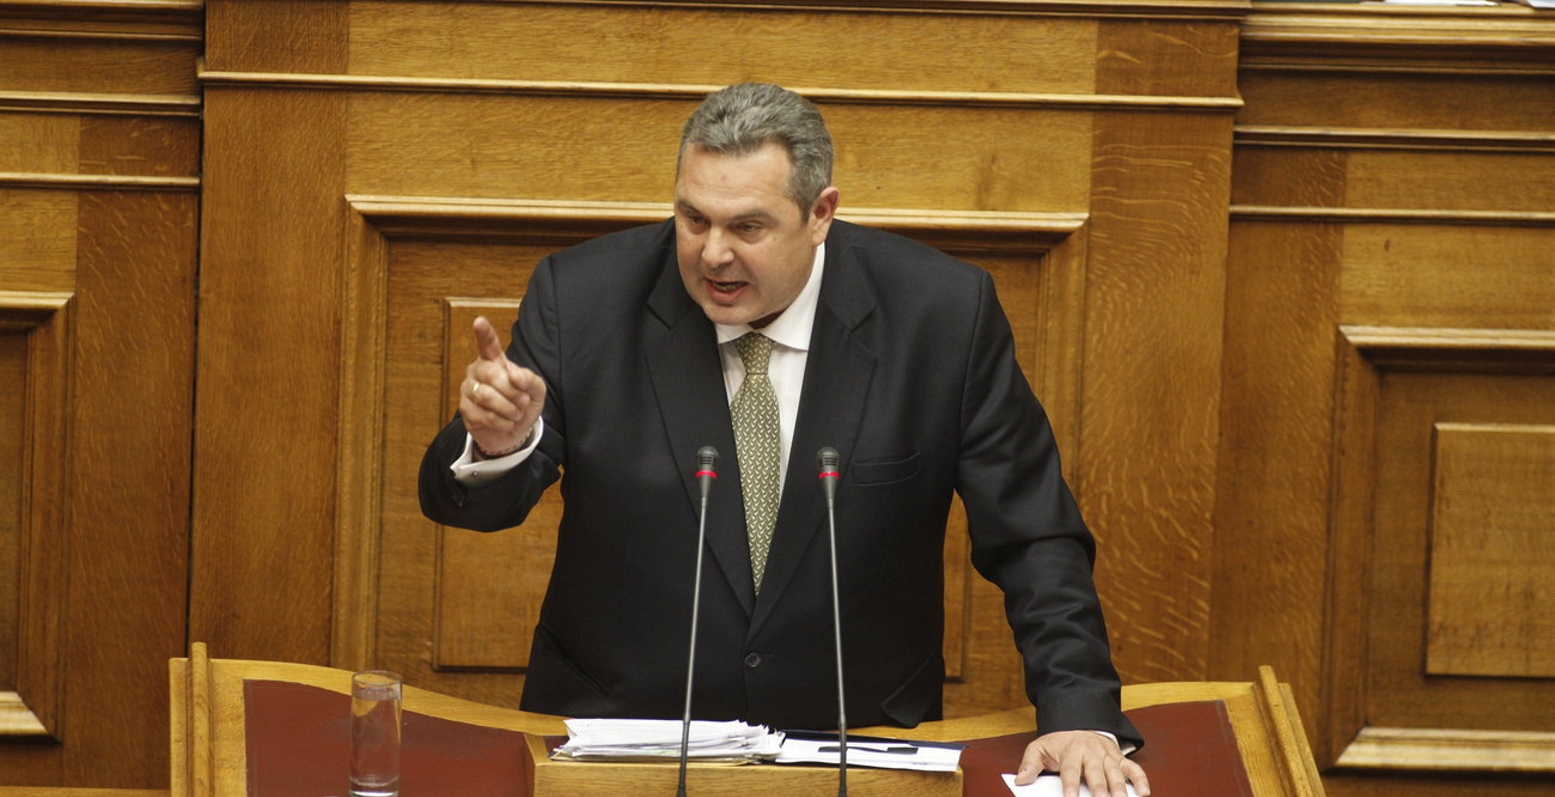 Θυελλώδης συνεδρίαση στη Βουλή – Π.Καμμένος: «Η σύνθεση της επιτροπής Εξωτερικών είναι παράνομη»